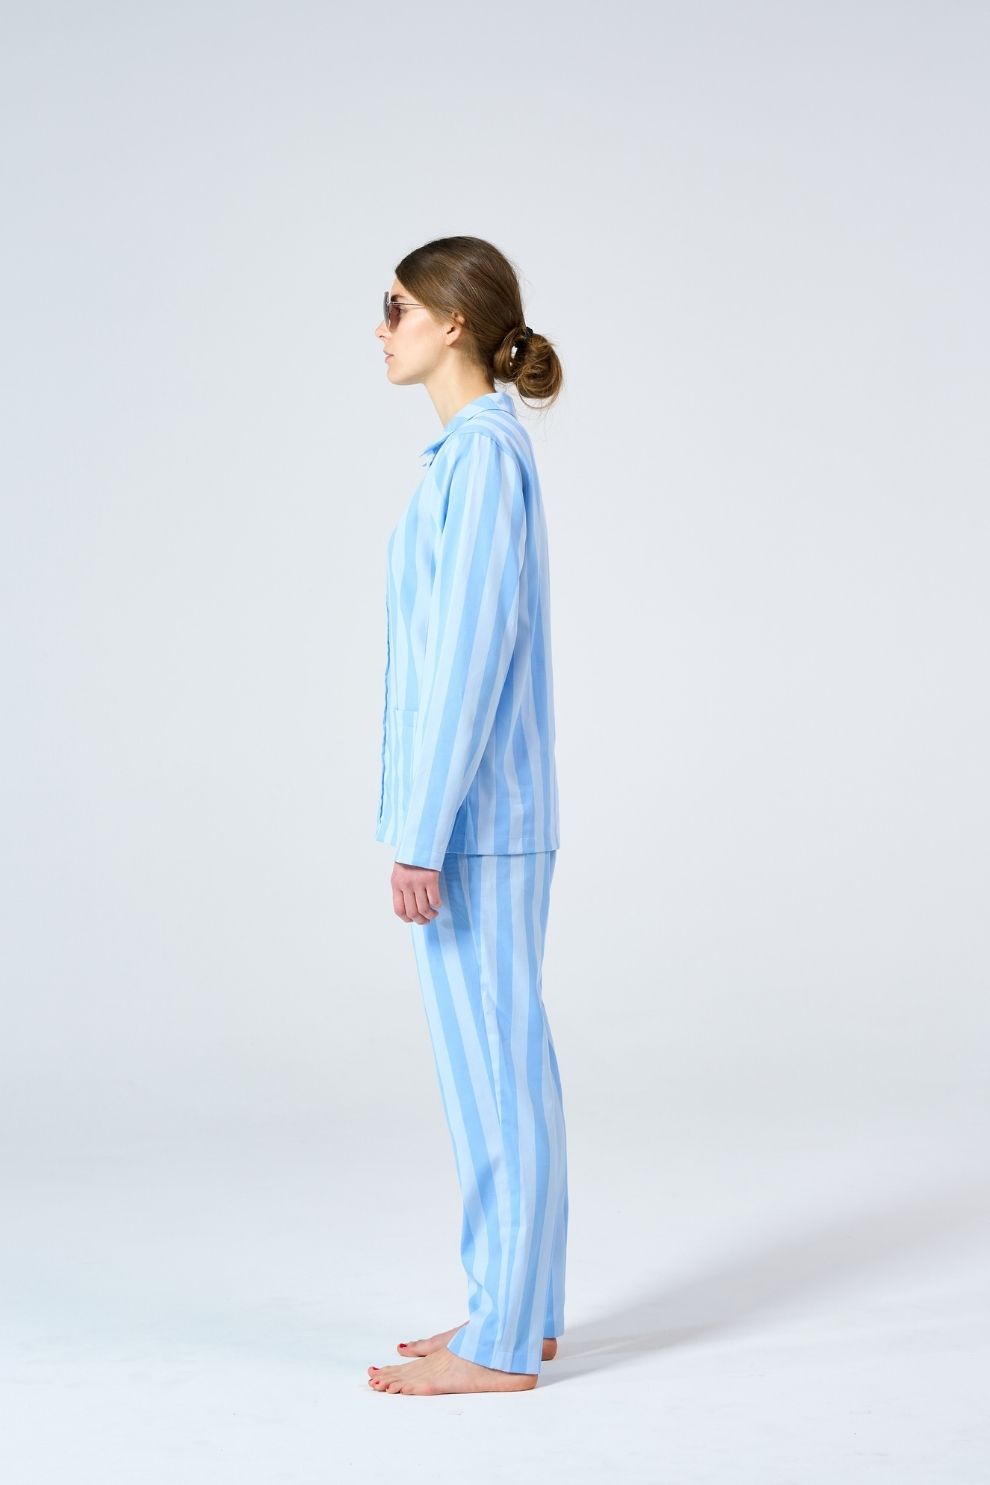 Sample Uno Stripe Light Blue & Blue Pyjamas